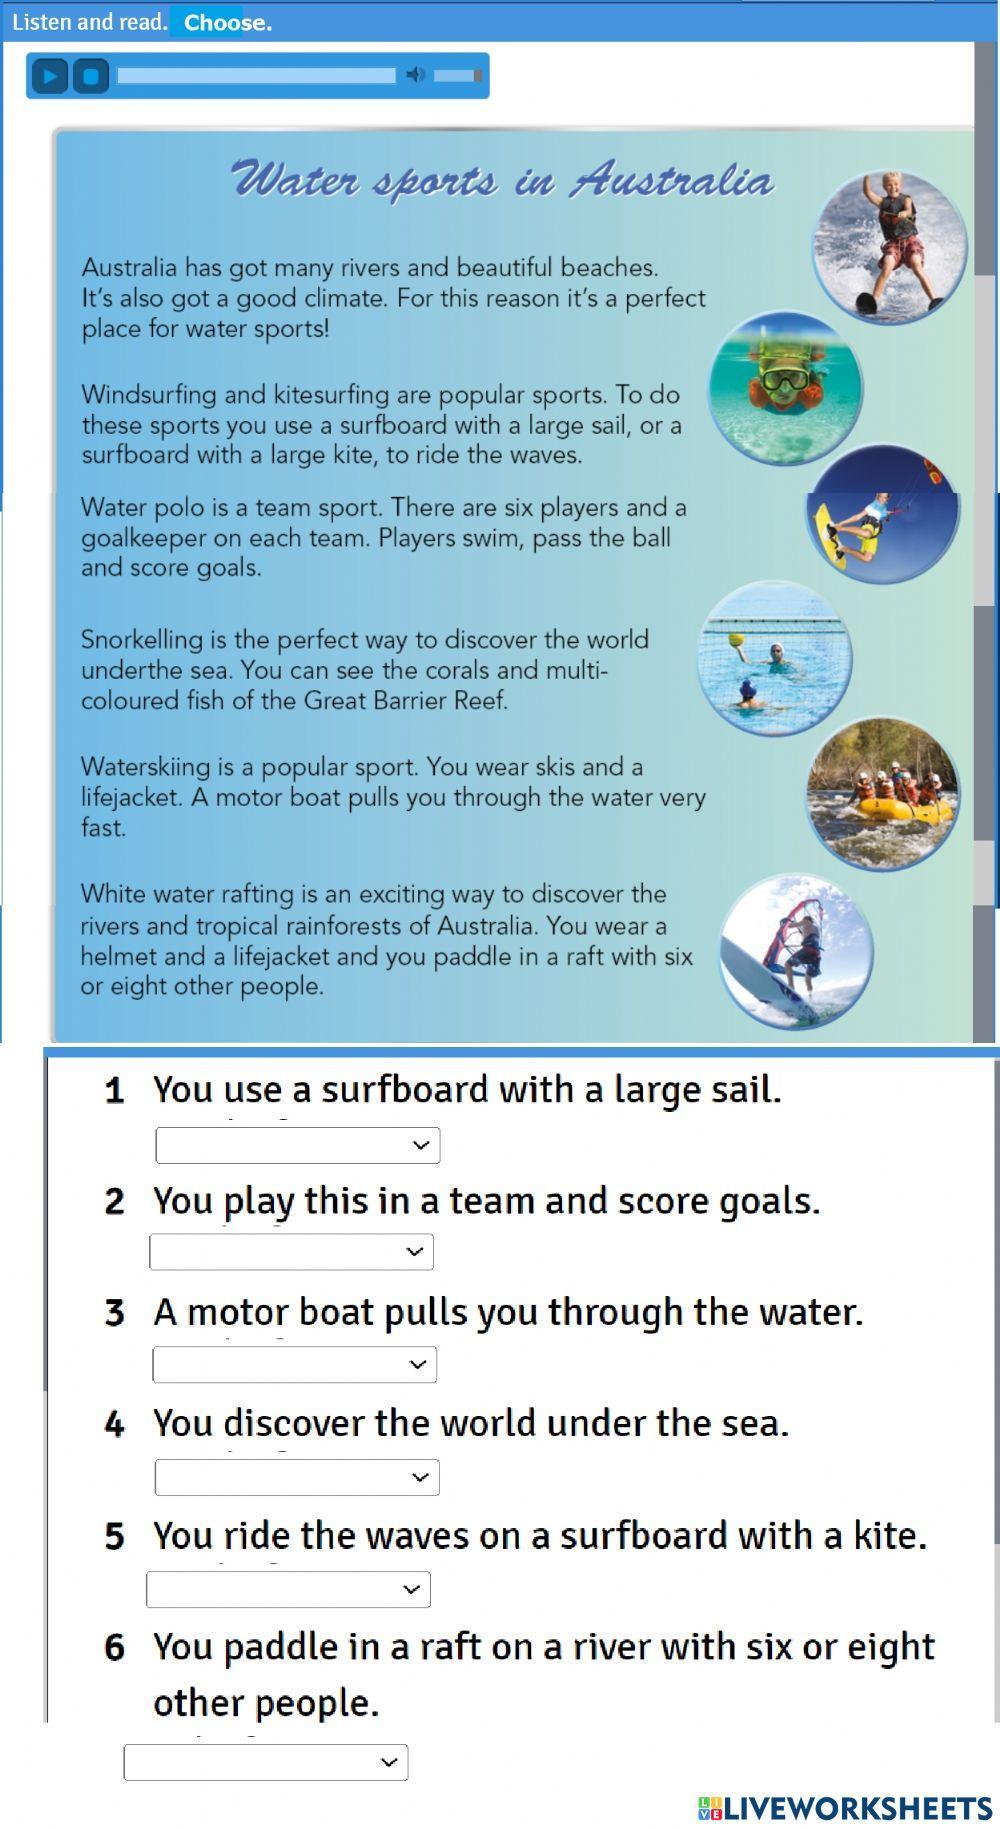 Water sports in australia